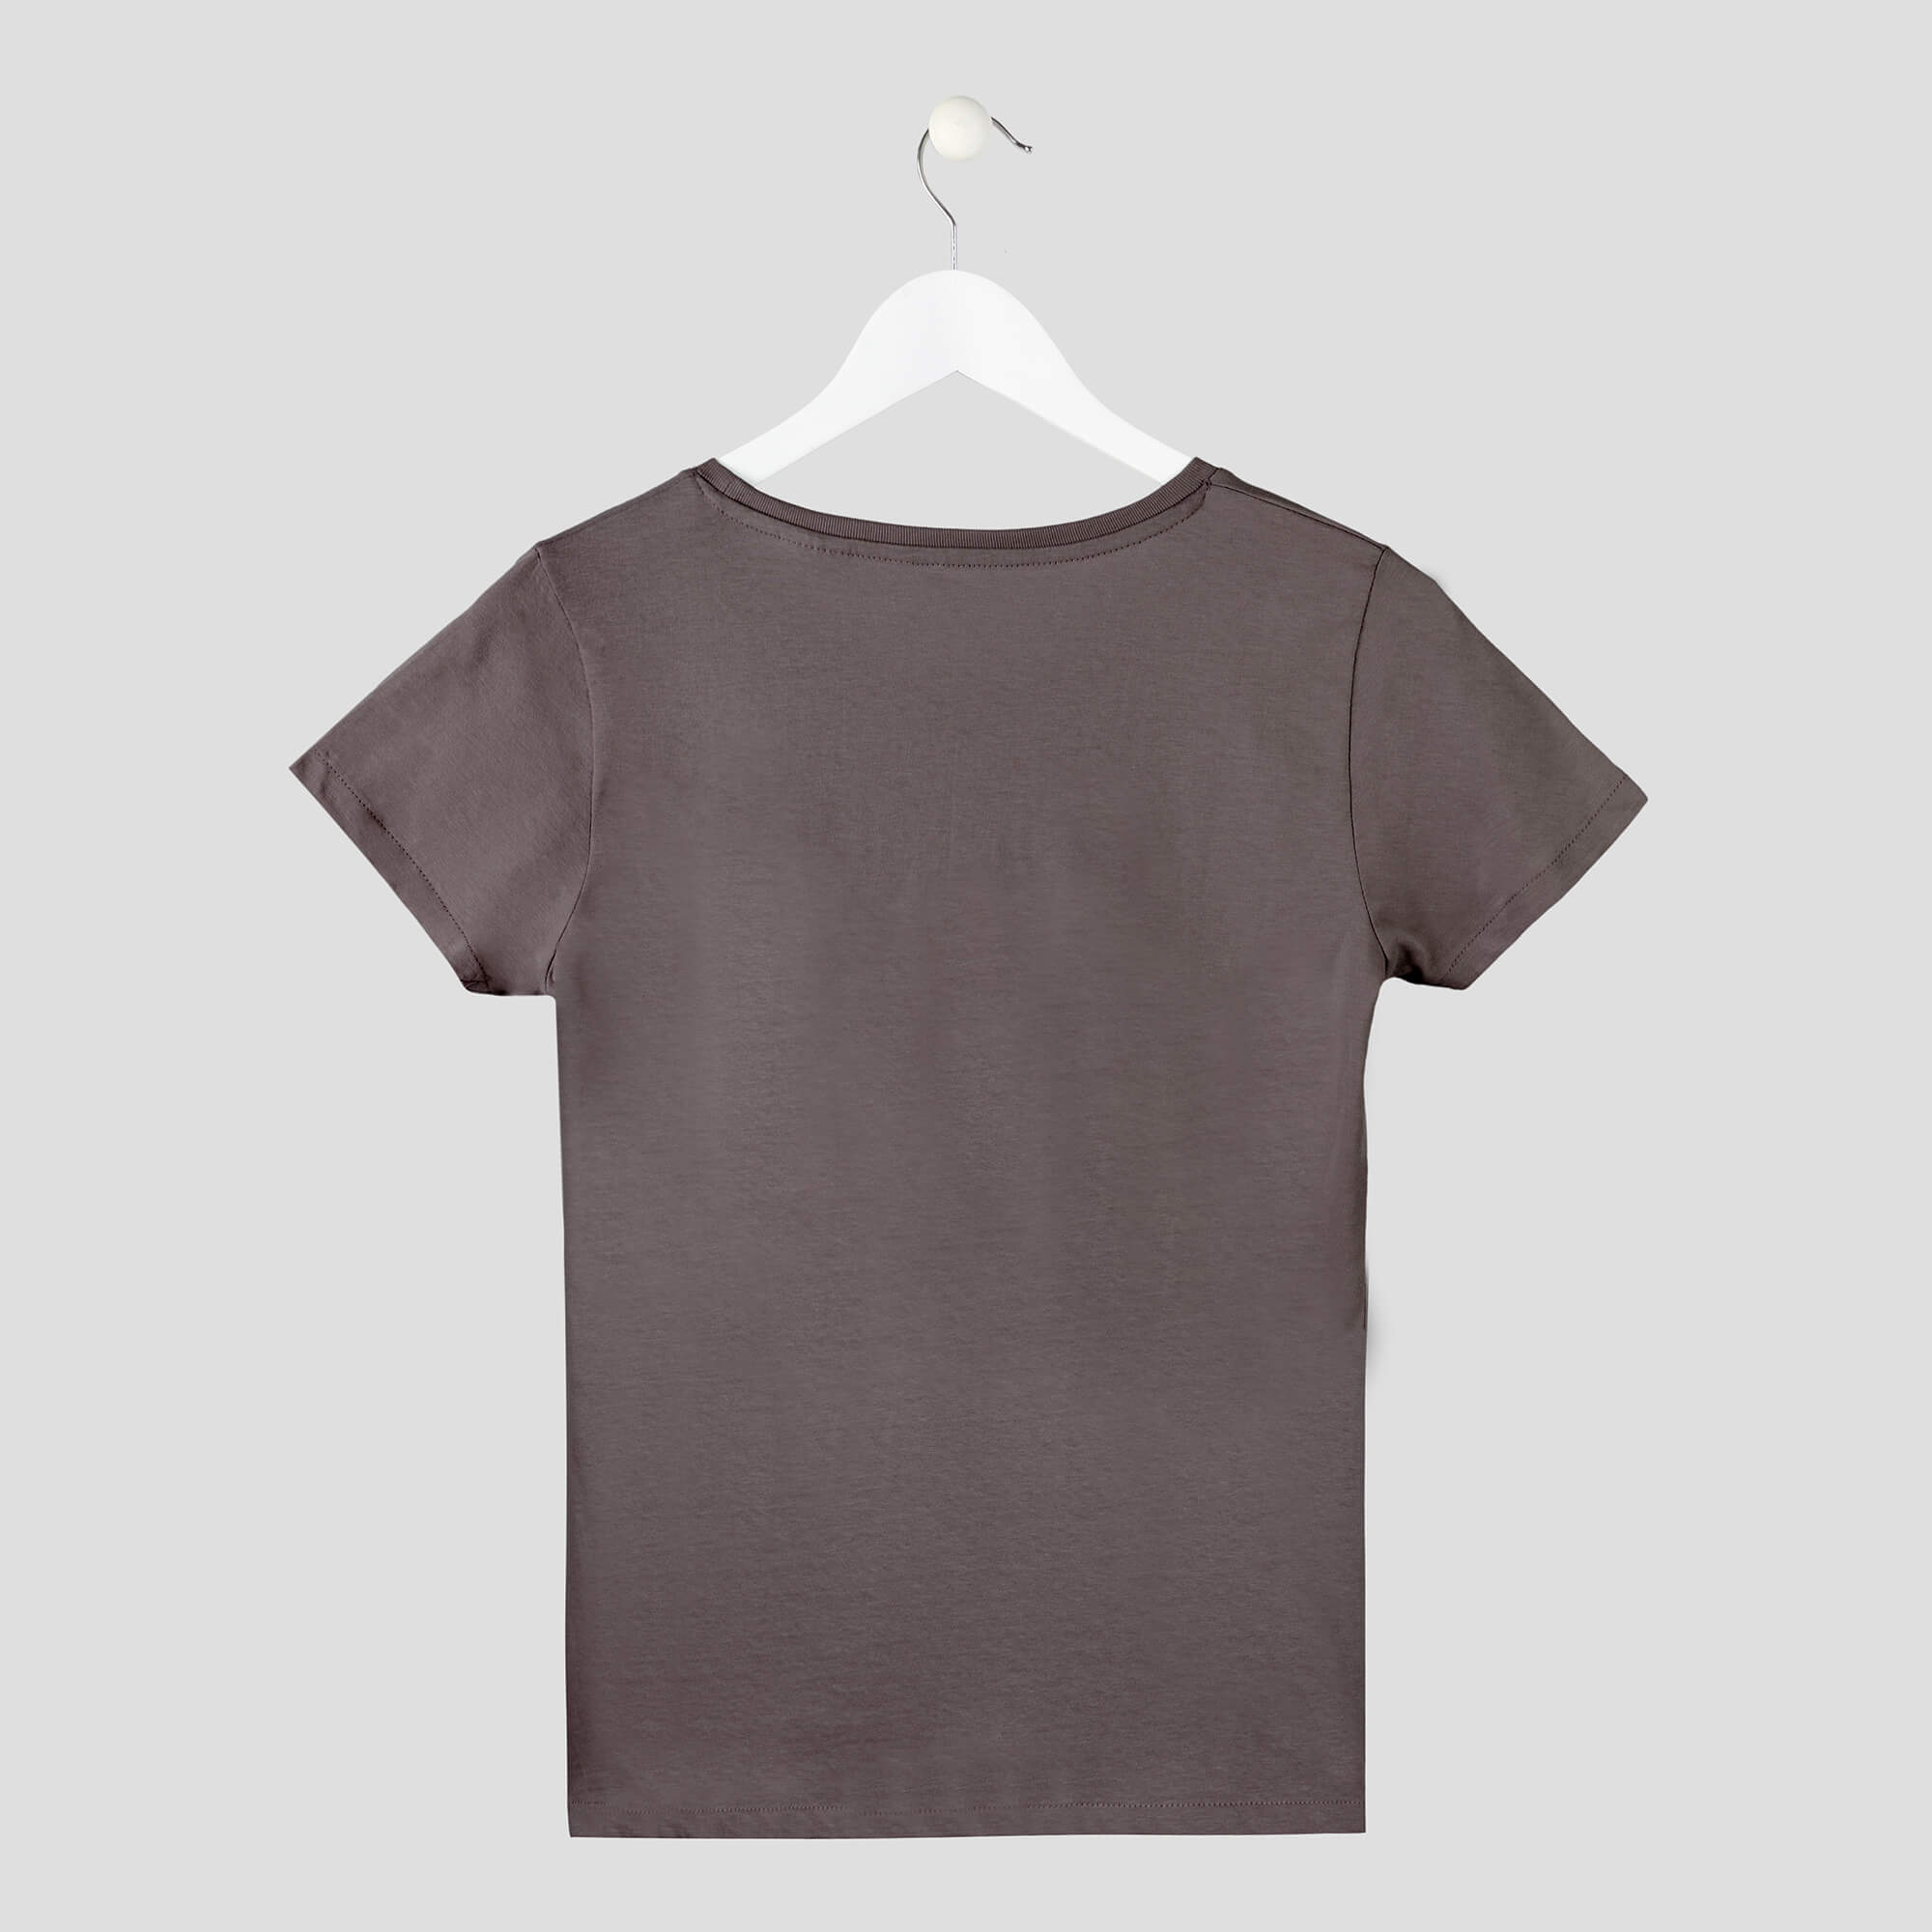 camiseta focus concentración minimalista de algodón orgánico mujer gris espalda